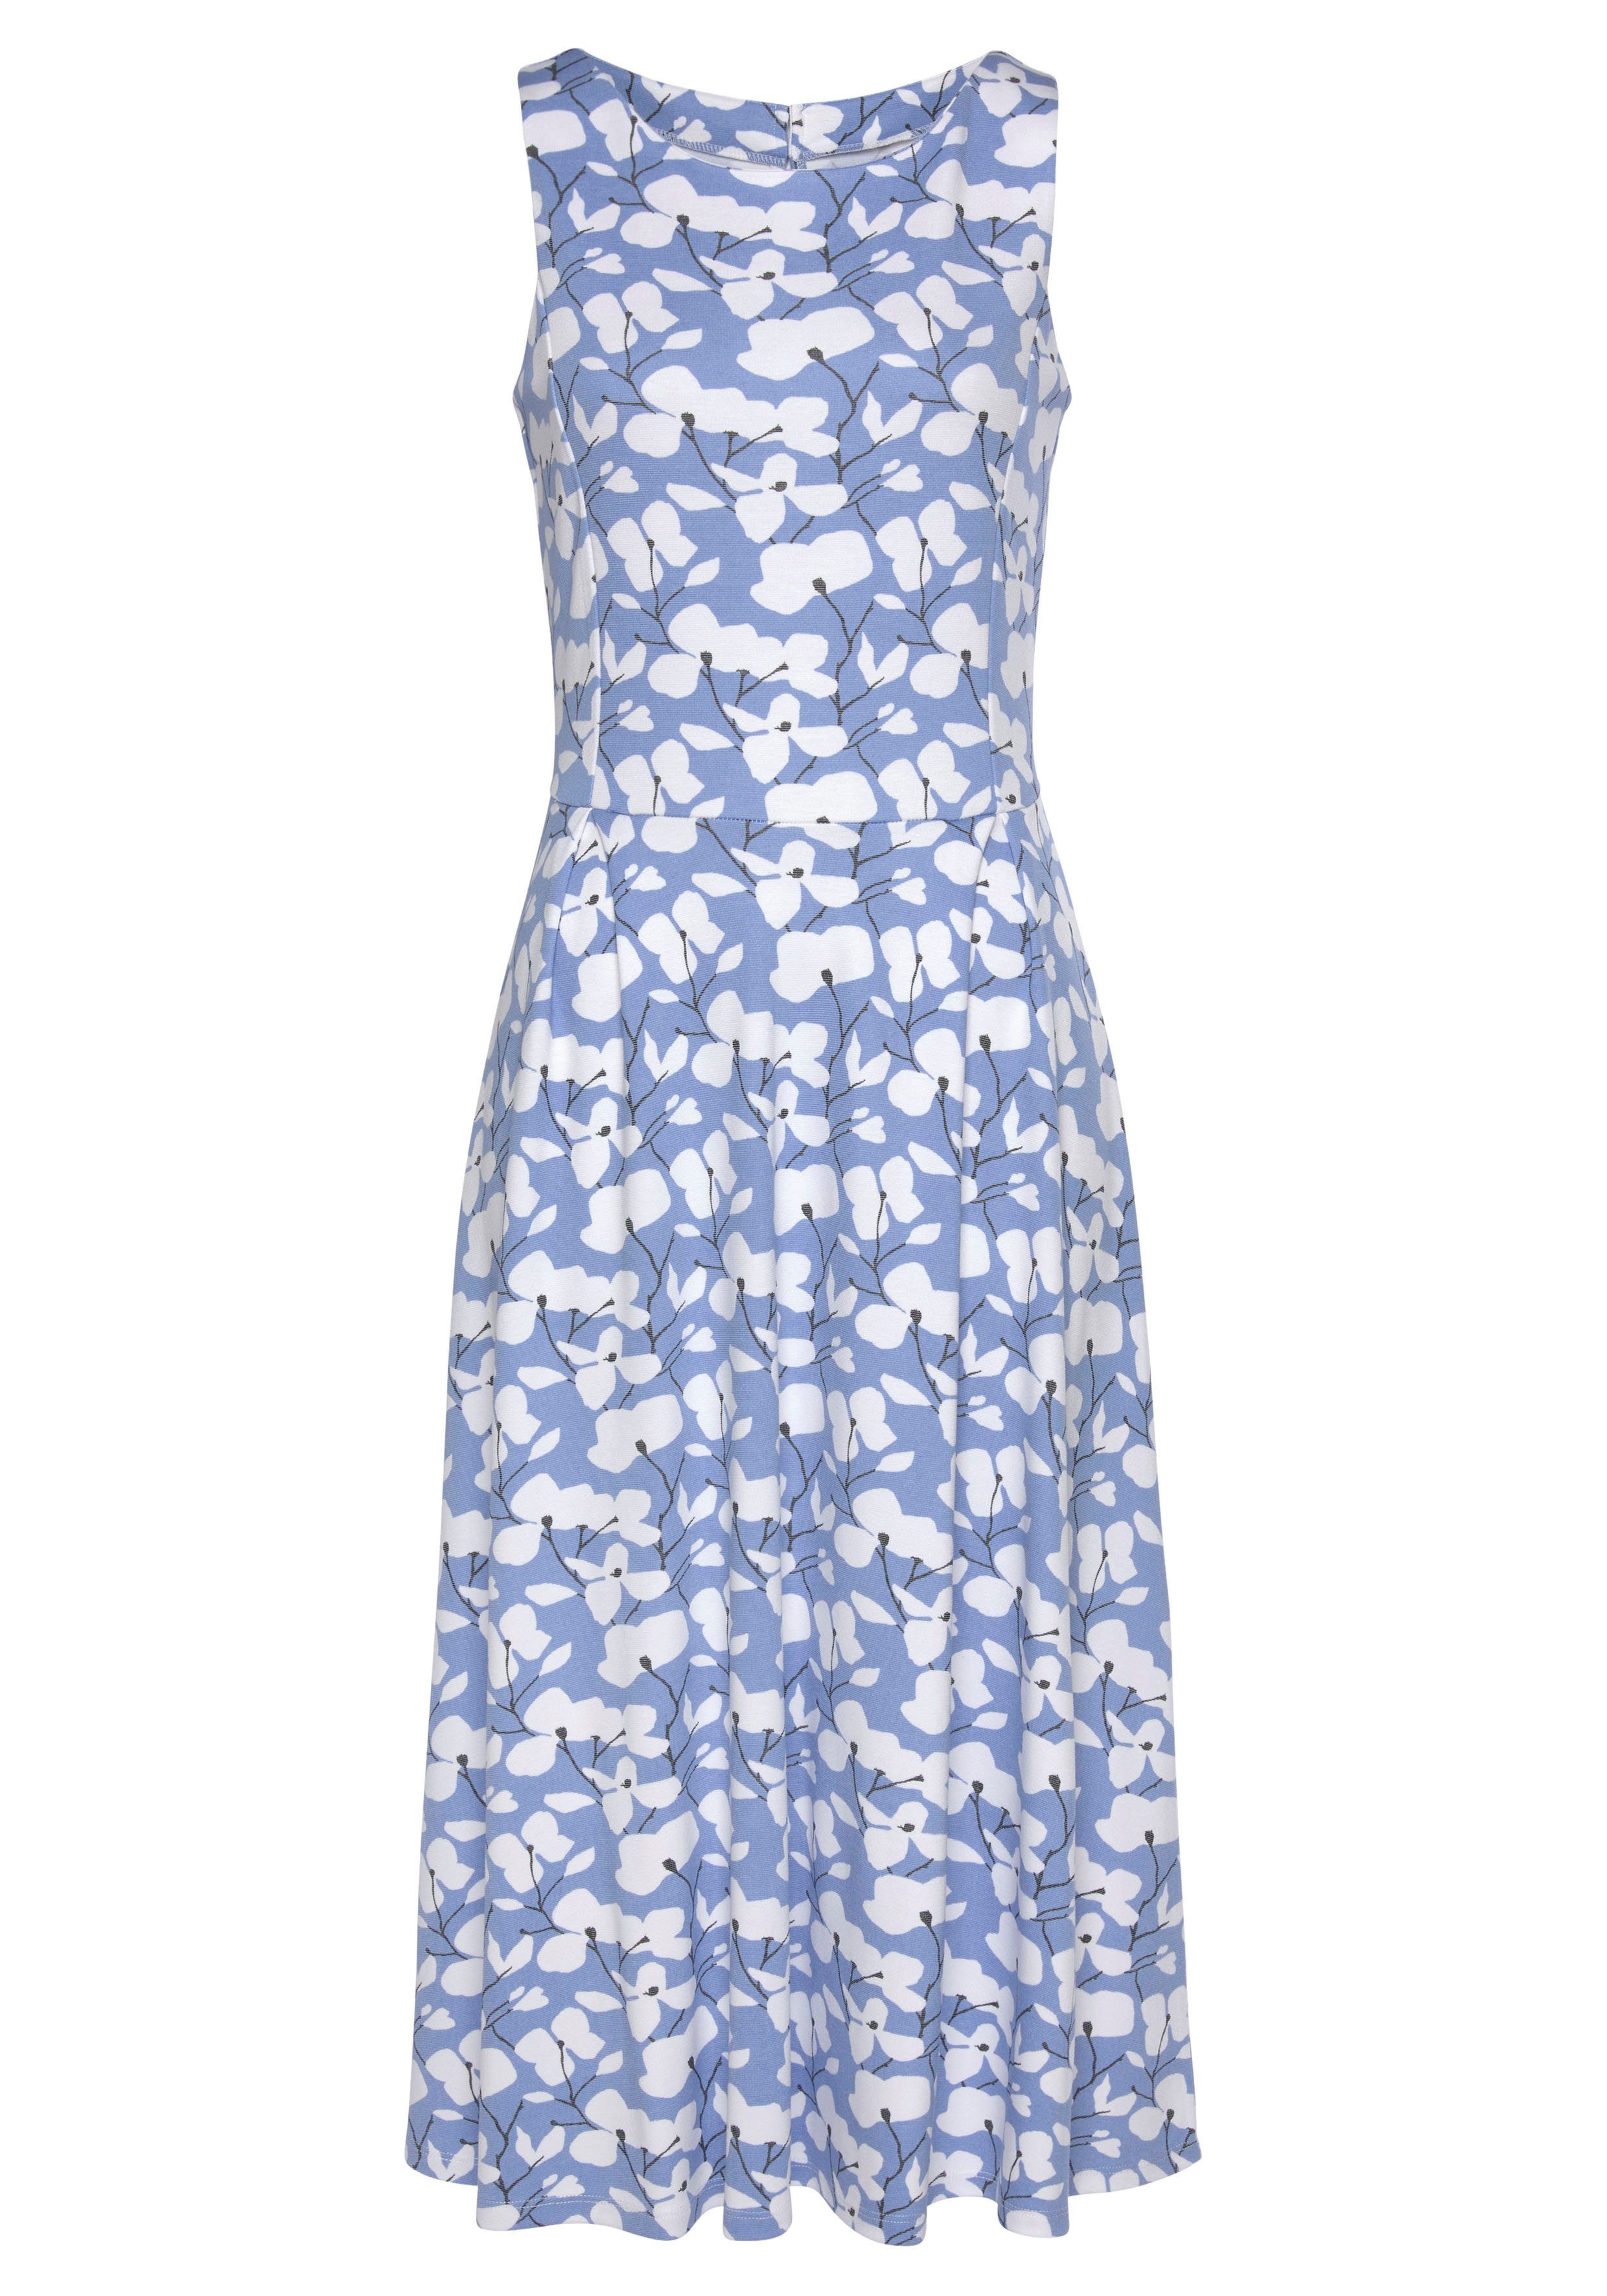 Blumendruck, Sommerkleid Strandbekleidung mit Beachtime Strandmode, blau-creme-bedruckt